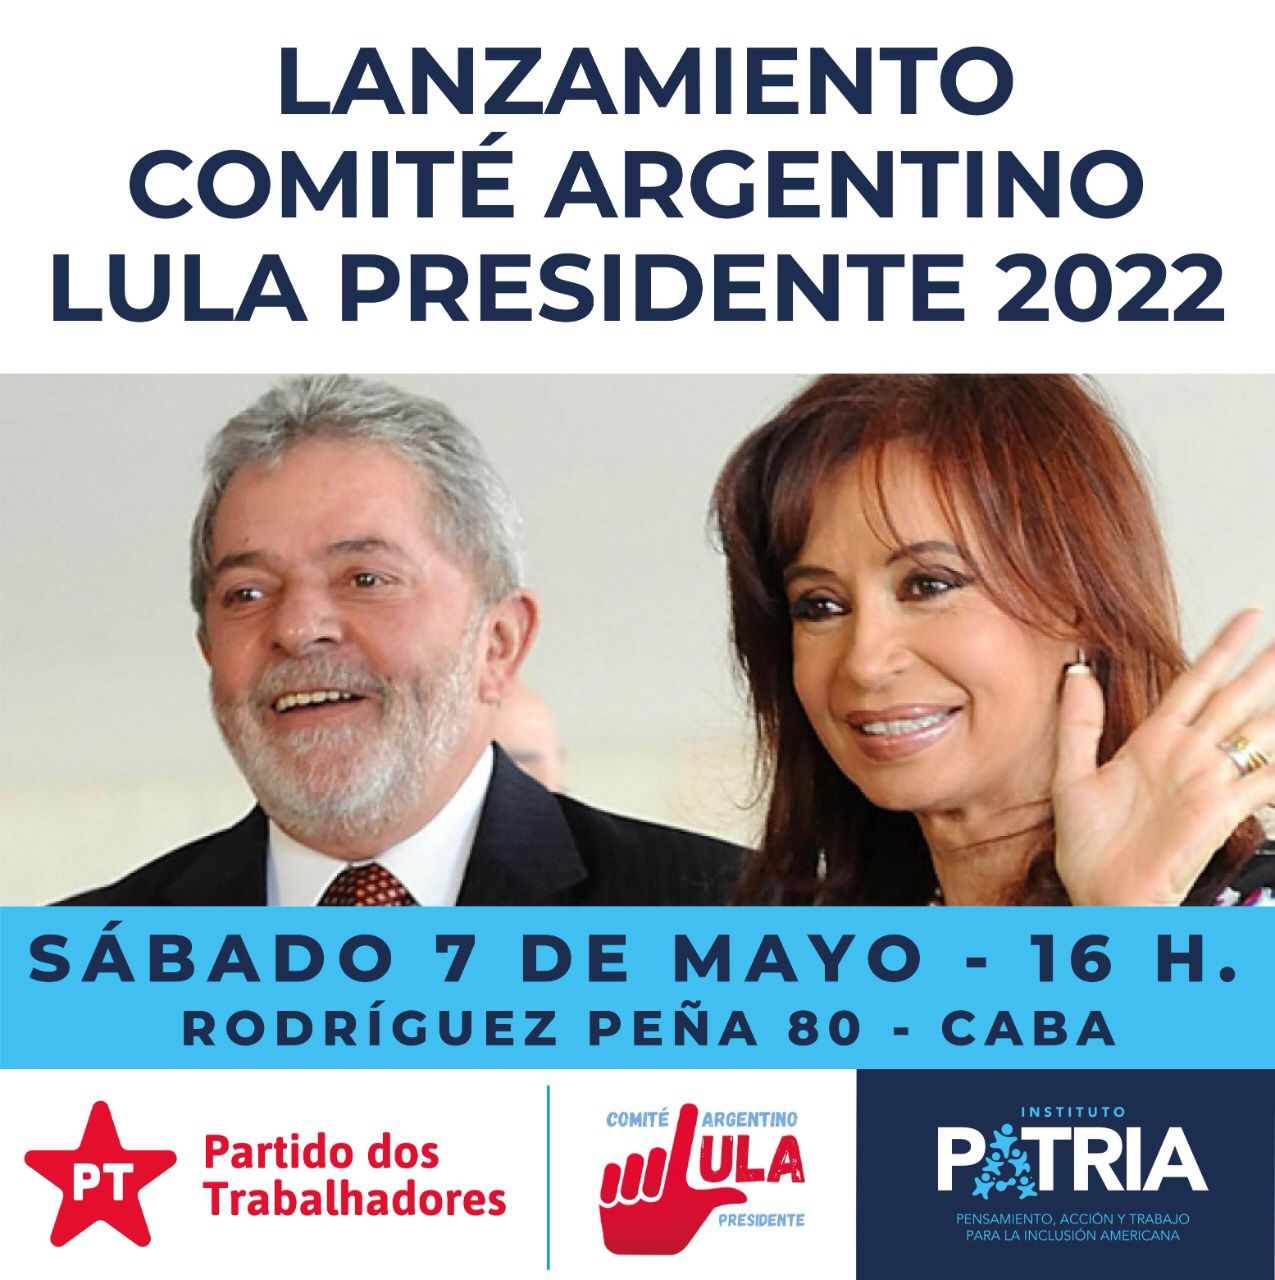 Lanzamiento del Comité Argentino Lula Presidente 2022